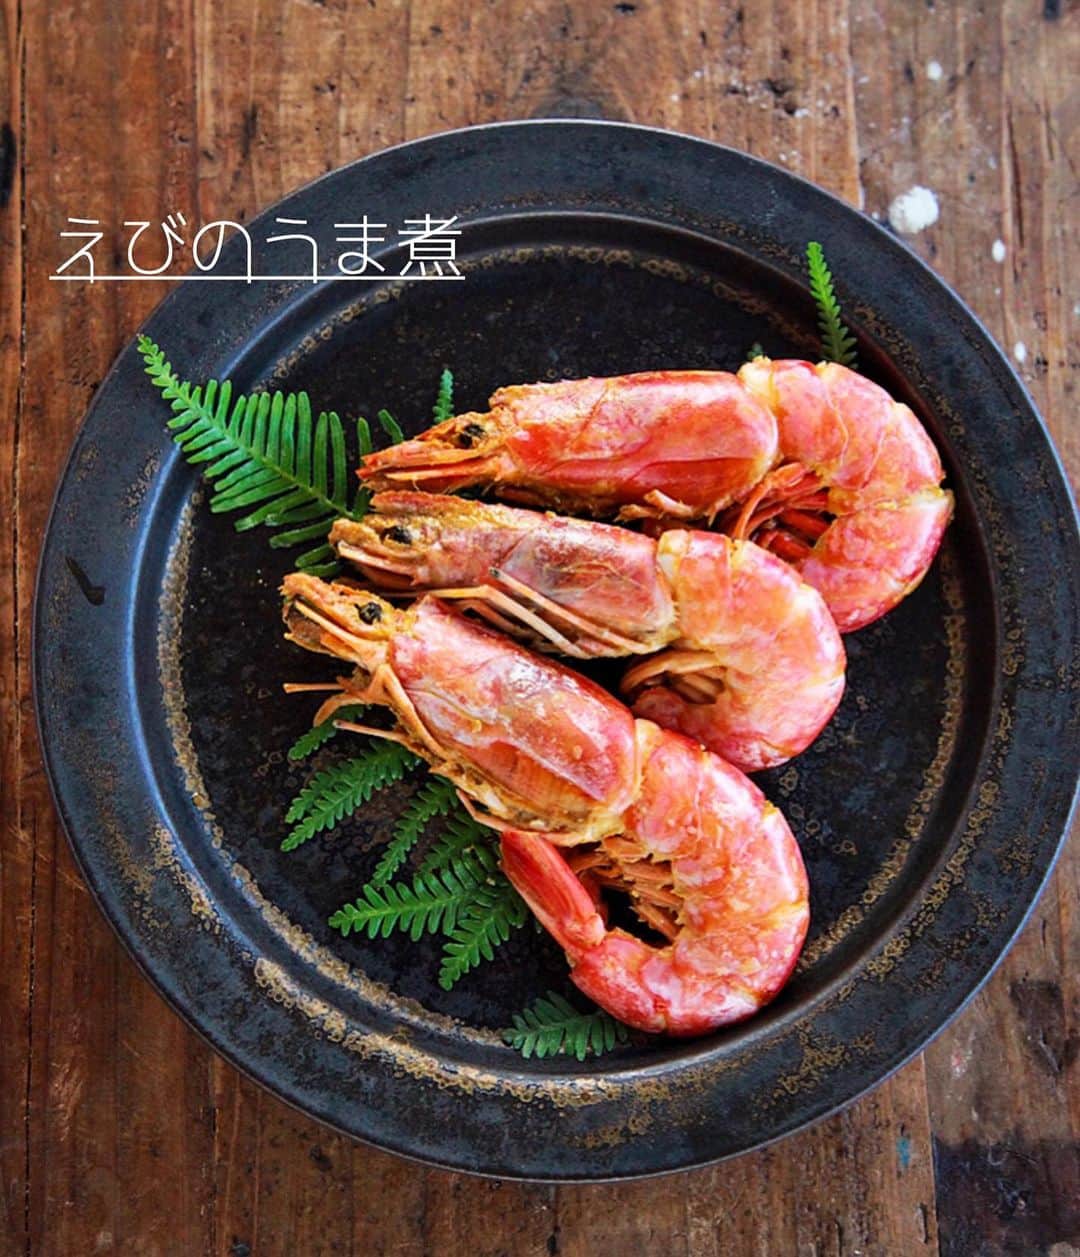 Mizuki【料理ブロガー・簡単レシピ】さんのインスタグラム写真 - (Mizuki【料理ブロガー・簡単レシピ】Instagram)「・﻿ 【#レシピ 】ーーー﻿ ♡えびのうま煮♡﻿ ーーーーーーーーー﻿ ﻿ ﻿ ﻿ おはようございます(*^^*)﻿ ﻿ 今日はおせち料理におすすめの﻿ \\ えびのうま煮 // のご紹介です♩﻿ ﻿ この時期になると﻿ よく見かける有頭えび🦐﻿ これがおせちに入っていると﻿ 華やかで豪華に見えますよ〜♡﻿ ﻿ 作り方は超簡単(*´艸`)﻿ 下処理したえびをさっと煮て﻿ 半日程度つけておくだけ！﻿ ﻿ 冷蔵庫で2〜3日持つので﻿ よかったらお試し下さいね(*^^*)﻿ ﻿ ﻿ ﻿ ＿＿＿＿＿＿＿＿＿＿＿＿＿＿＿＿＿＿＿＿﻿ 【作りやすい量】﻿ 有頭えび...8〜10尾﻿ ●水・酒...各100ml﻿ ●醤油・みりん...各大1.5﻿ ●砂糖...大1﻿ ●和風だし...小1/3﻿ ﻿ 1.えびは殻の上から爪楊枝を刺して背ワタを除く。頭の先とヒゲ、尾の先を切り揃えて綺麗に洗う。﻿ 2.鍋に●を入れて煮立て、1を入れ、時々返しながら弱めの中火で5分煮る。﻿ 3. 煮汁ごと保存容器に入れ、冷蔵庫で半日以上つける。﻿ ￣￣￣￣￣￣￣￣￣￣￣￣￣￣￣￣￣￣￣￣﻿ ﻿ ﻿ ﻿ 《ポイント》﻿ ♦︎えびの関節部分に爪楊枝を刺して背ワタを除きます♩﻿ ♦︎煮すぎるとかたくなるので注意して下さい☆﻿ ♦︎お鍋に入り切らなかったので2回に分けて(同じ煮汁で)煮ました♩﻿ ♦︎冷蔵庫で2〜3日保存できます♩﻿ ﻿ ﻿ ﻿ ﻿ ﻿ ﻿ ﻿ ﻿ 📕新刊発売中📕﻿ 【ラクしておいしい！#1品晩ごはん 】﻿ ￣￣￣￣￣￣￣￣￣￣￣￣￣￣￣￣￣﻿ 私たちだってヘトヘトな日がある•••﻿ 毎日何品も作っていられない•••﻿ もうごはんに悩みたくない😢﻿ そんな時、1品ごはんはいかがでしょう？﻿ というご提案です✨﻿ ﻿ 【1品ごはん】は﻿ 副菜いらずで全てがシンプル！﻿ ￣￣￣￣￣￣￣￣￣￣￣￣￣￣￣￣￣￣﻿ 一品つくるだけでいいから﻿ 献立を考えなくてよし！﻿ ￣￣￣￣￣￣￣￣￣￣￣￣￣￣￣￣￣￣﻿ 悩まない、疲れない、﻿ 気力や時間がなくてもなんとかなる！﻿ ￣￣￣￣￣￣￣￣￣￣￣￣￣￣￣￣￣￣﻿ そんな頼りになる﻿ 便利なお助けごはんです☺️💕﻿ (ハイライトに🔗貼っています✨)﻿ ￣￣￣￣￣￣￣￣￣￣￣￣￣￣￣￣￣﻿ ﻿ ﻿ ﻿ ﻿ ﻿ ⭐️発売中⭐️﻿ ＿＿＿＿＿＿＿＿＿＿＿＿＿＿＿＿＿＿﻿ しんどくない献立、考えました♩﻿ \15分でいただきます/﻿ 📕#Mizukiの2品献立 📕﻿ ﻿ 和食をもっとカジュアルに♩﻿ \毎日のごはんがラクになる/﻿ 📘#Mizukiの今どき和食 📘﻿ ﻿ ホケミレシピの決定版♩﻿ \はじめてでも失敗しない/﻿ 📙ホットケーキミックスのお菓子 📙﻿ ﻿ NHKまる得マガジンテキスト☆﻿ ホットケーキミックスで﻿ 📗絶品おやつ&意外なランチ📗﻿ ￣￣￣￣￣￣￣￣￣￣￣￣￣￣￣￣￣￣﻿ ﻿ ﻿ ﻿ ＿＿＿＿＿＿＿＿＿＿＿＿＿＿＿＿＿＿﻿ レシピを作って下さった際や﻿ レシピ本についてのご投稿には﻿ タグ付け( @mizuki_31cafe )して﻿ お知らせいただけると嬉しいです😊💕﻿ ￣￣￣￣￣￣￣￣￣￣￣￣￣￣￣￣￣￣﻿ ﻿ ﻿ ﻿ ﻿ #えび#うま煮#おせち料理#お正月#Mizuki#簡単レシピ#時短レシピ#節約レシピ#料理#フーディーテーブル#マカロニメイト#おうちごはん#デリスタグラマー#料理好きな人と繋がりたい#料理記録#おうちごはんlover#写真好きな人と繋がりたい#foodpic#cooking#recipe#lin_stagrammer#foodporn#yummy#f52grams#えびのうま煮m」12月30日 7時13分 - mizuki_31cafe